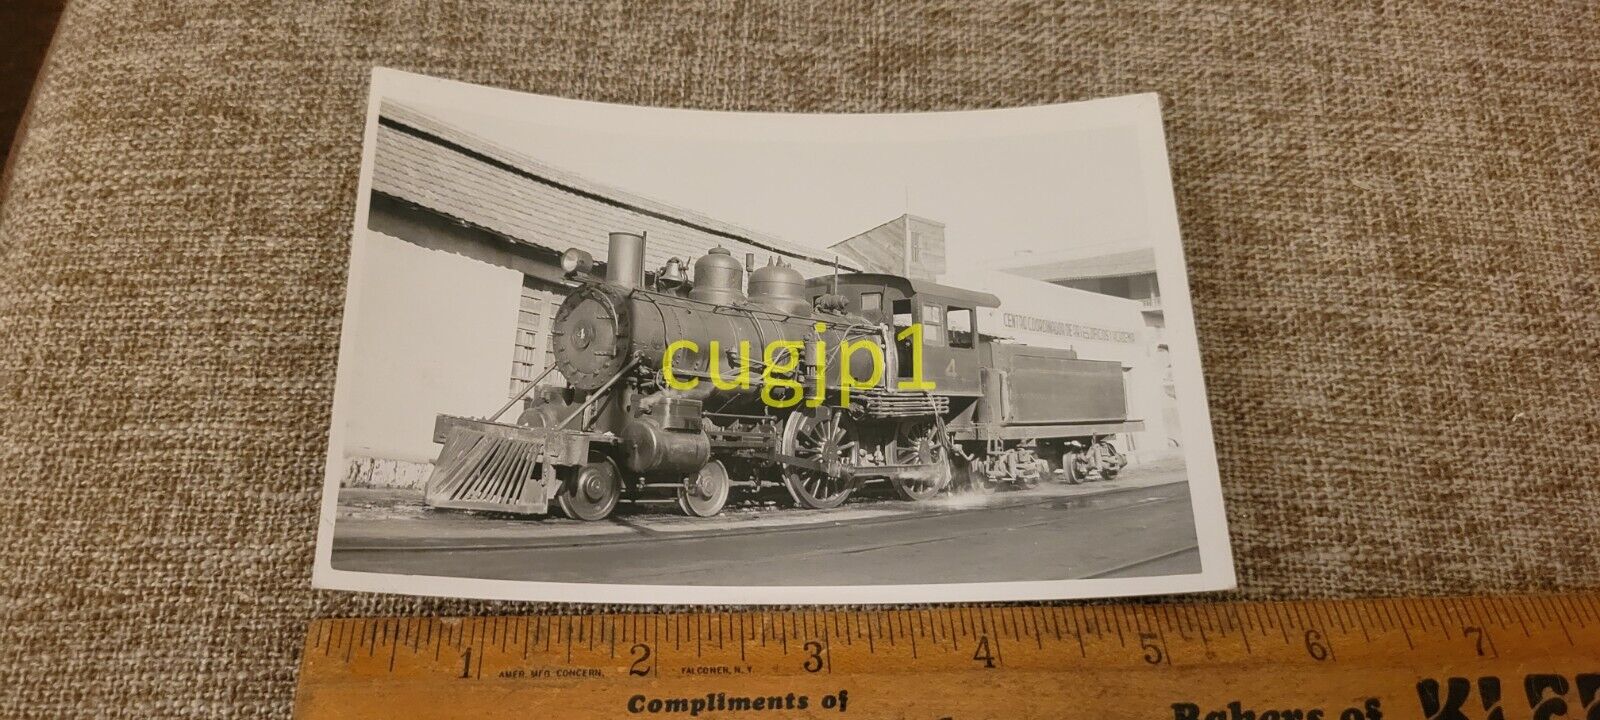 R37 Train Photograph Locomotive Engine RPPC U DE Y 4 STD GA BALDWIN 41676 9/1914